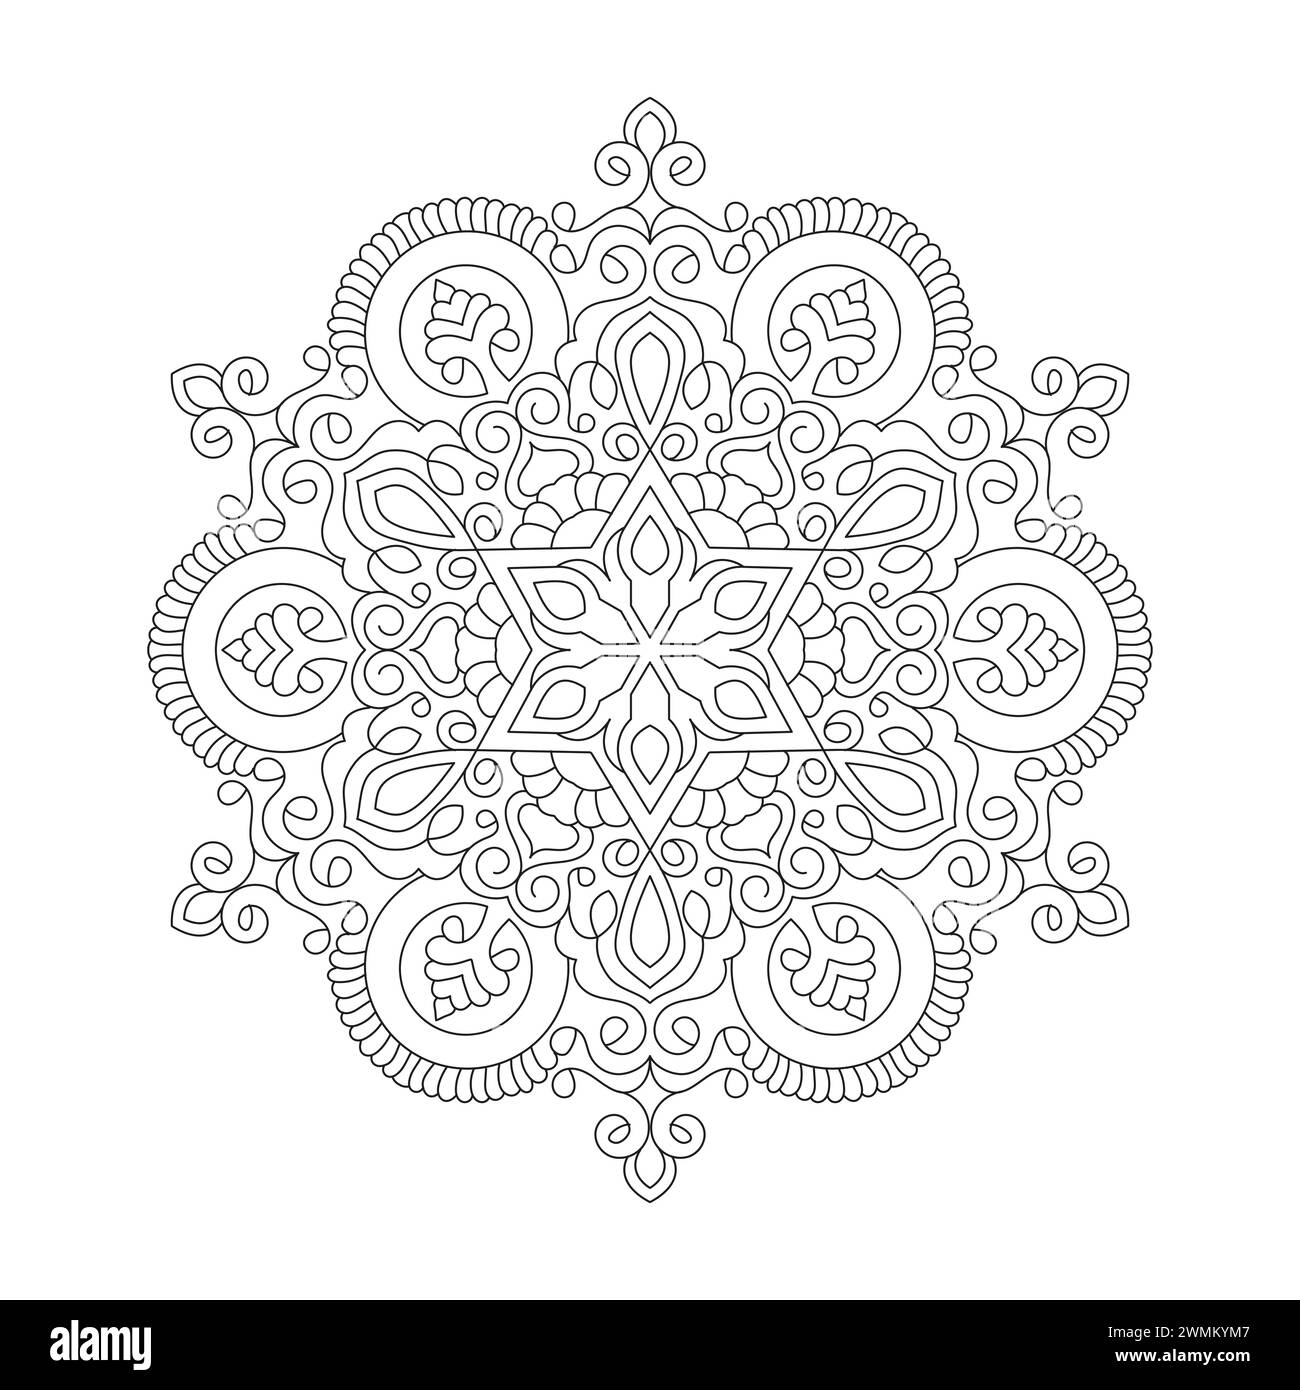 Simplicity Mystical Mandala Coloring Book Page per kdp Book Interior. Petali tranquilli, capacità di rilassarsi, esperienze cerebrali, paradiso armonioso, pace Illustrazione Vettoriale